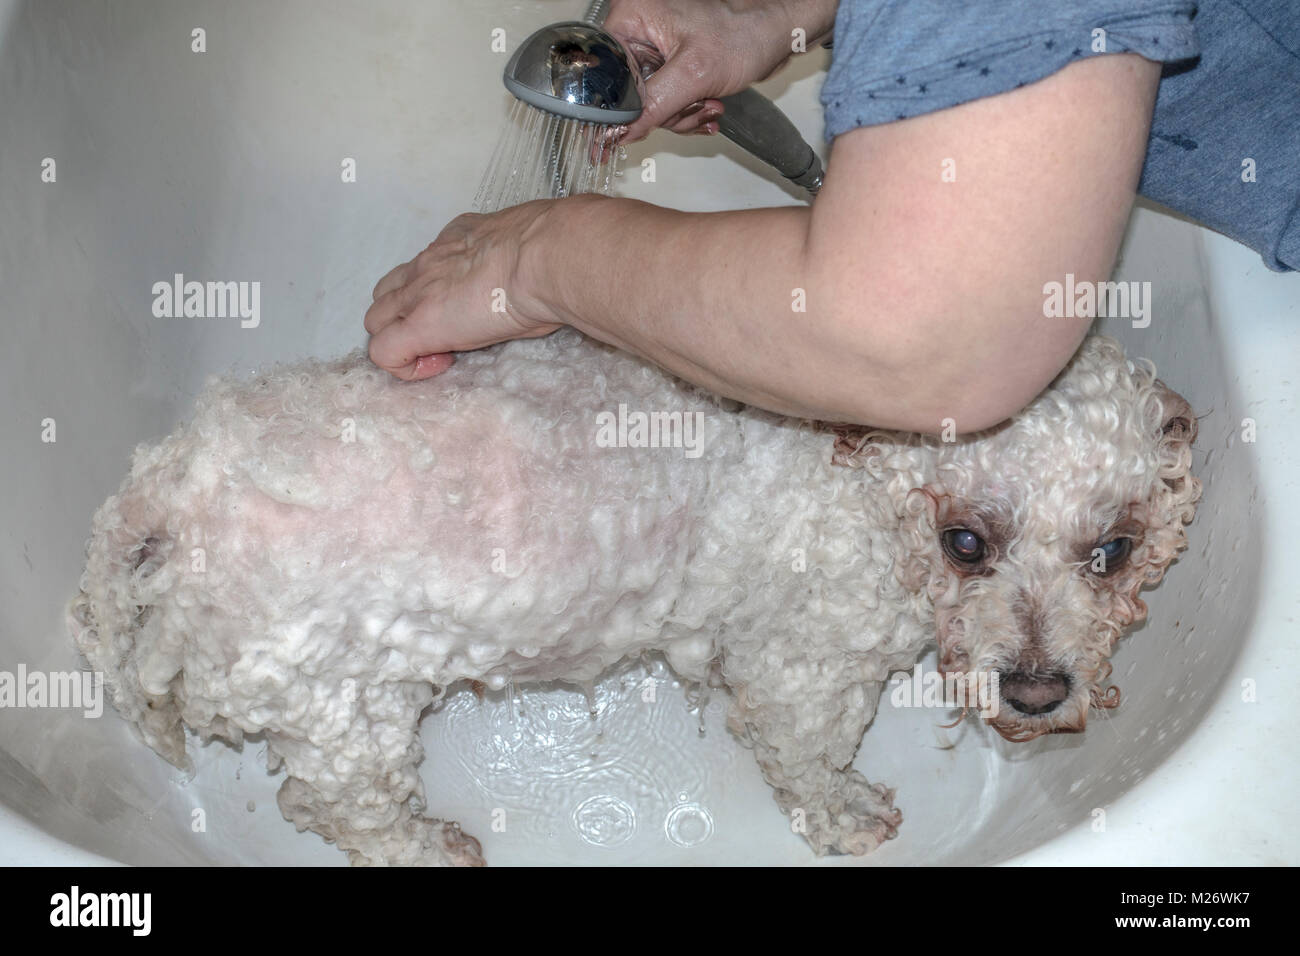 Donna lavando il suo bianco rivestito di ricci, pedigree pet Bichon Frise cane, in una vasca da bagno a casa, con acqua calda e sapone. Inghilterra, Regno Unito. Foto Stock